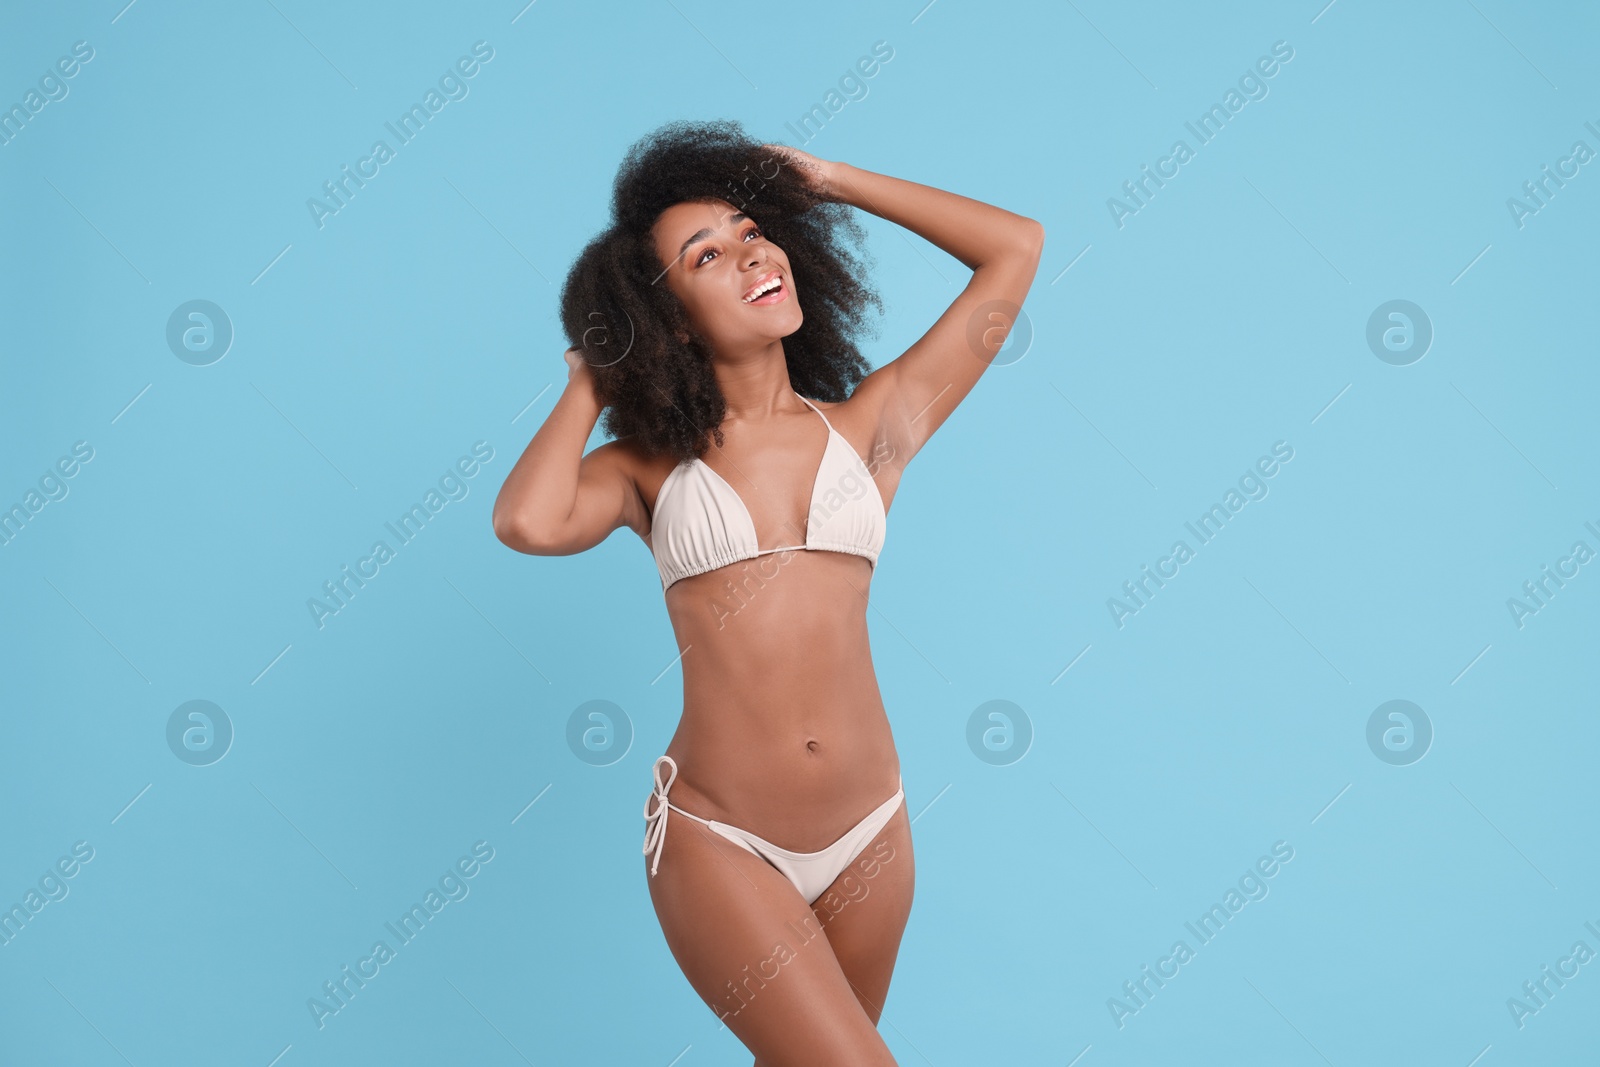 Photo of Beautiful woman in stylish bikini on light blue background